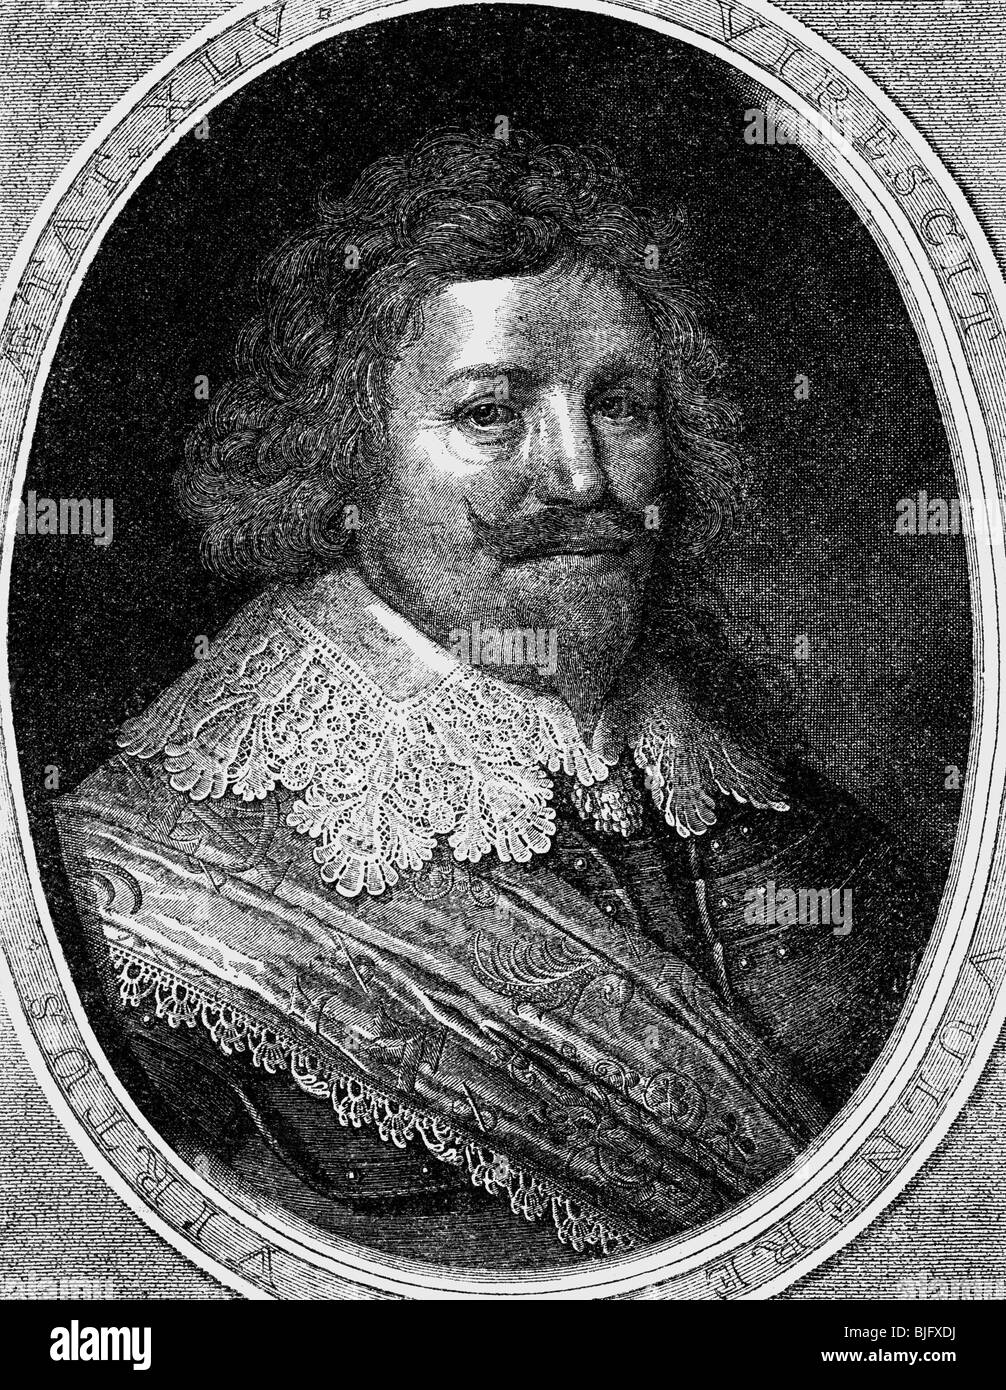 Coligny, Gaspard III, Marchese d'Andelot, 26.7.1584 - 4.1.1646, generale francese, ritratto, incisione su rame, 1600, , artista del diritto d'autore non deve essere cancellata Foto Stock